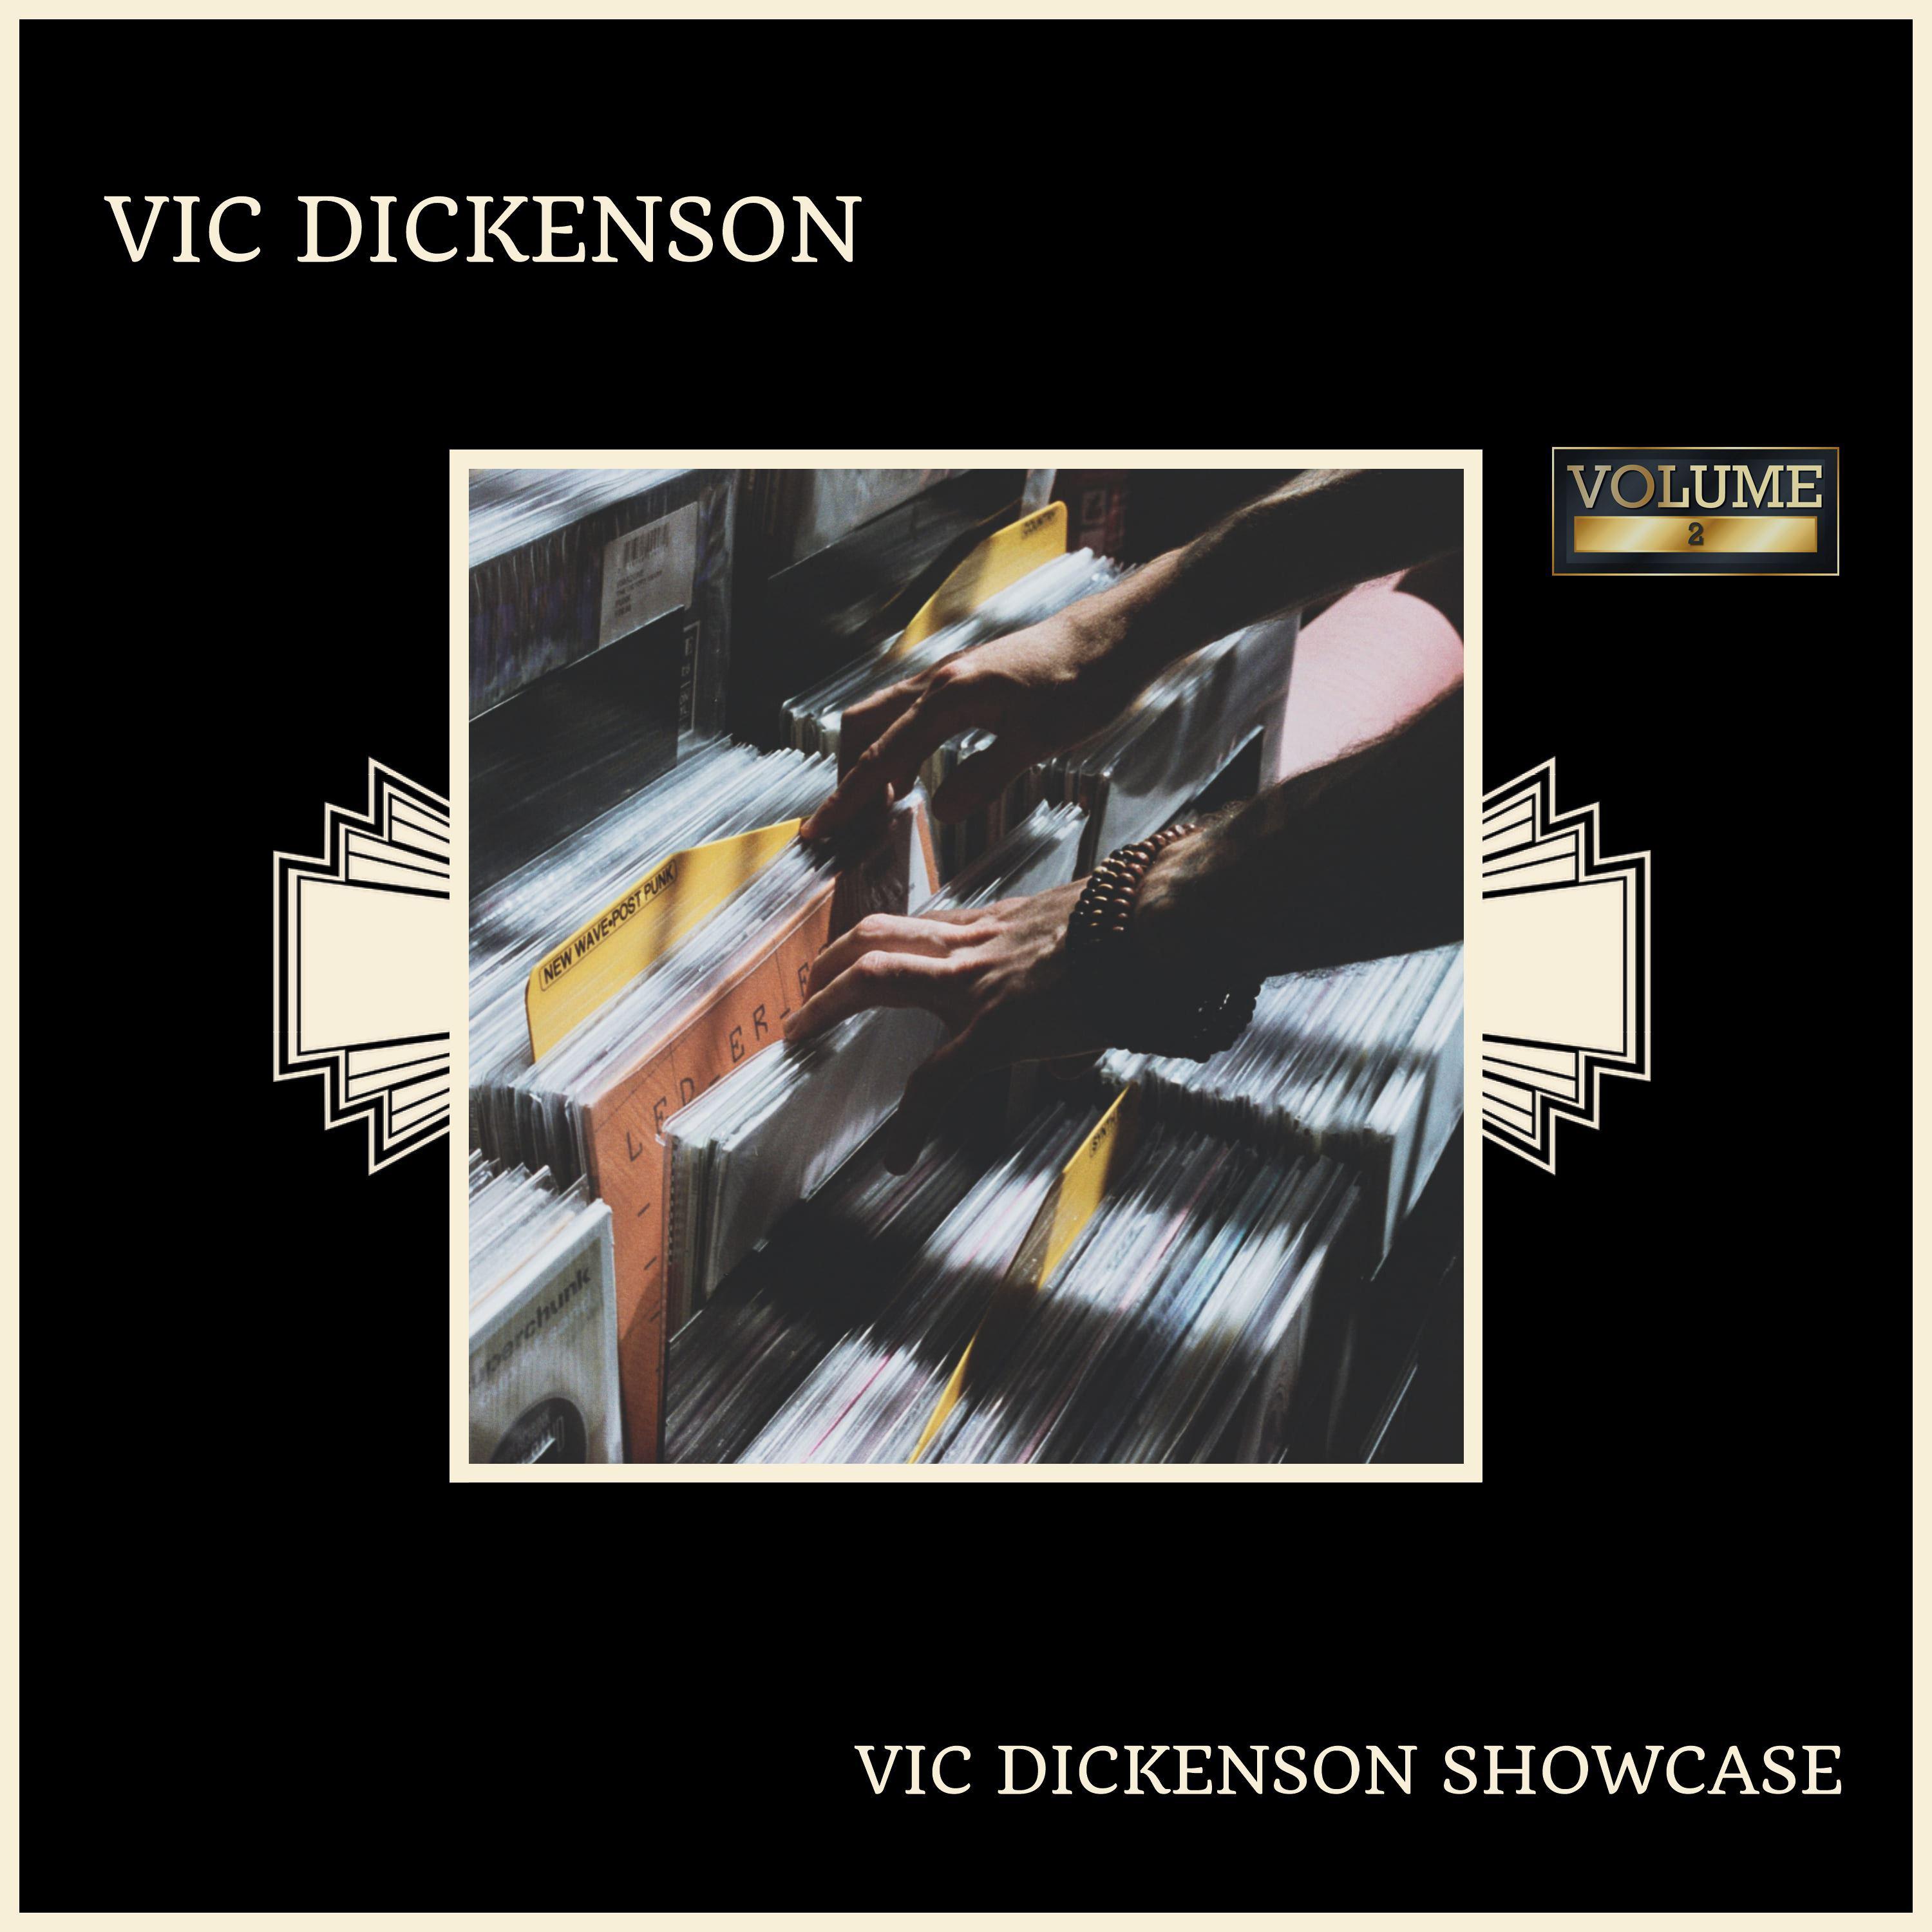 Vic ********* Showcase (Volume 2)